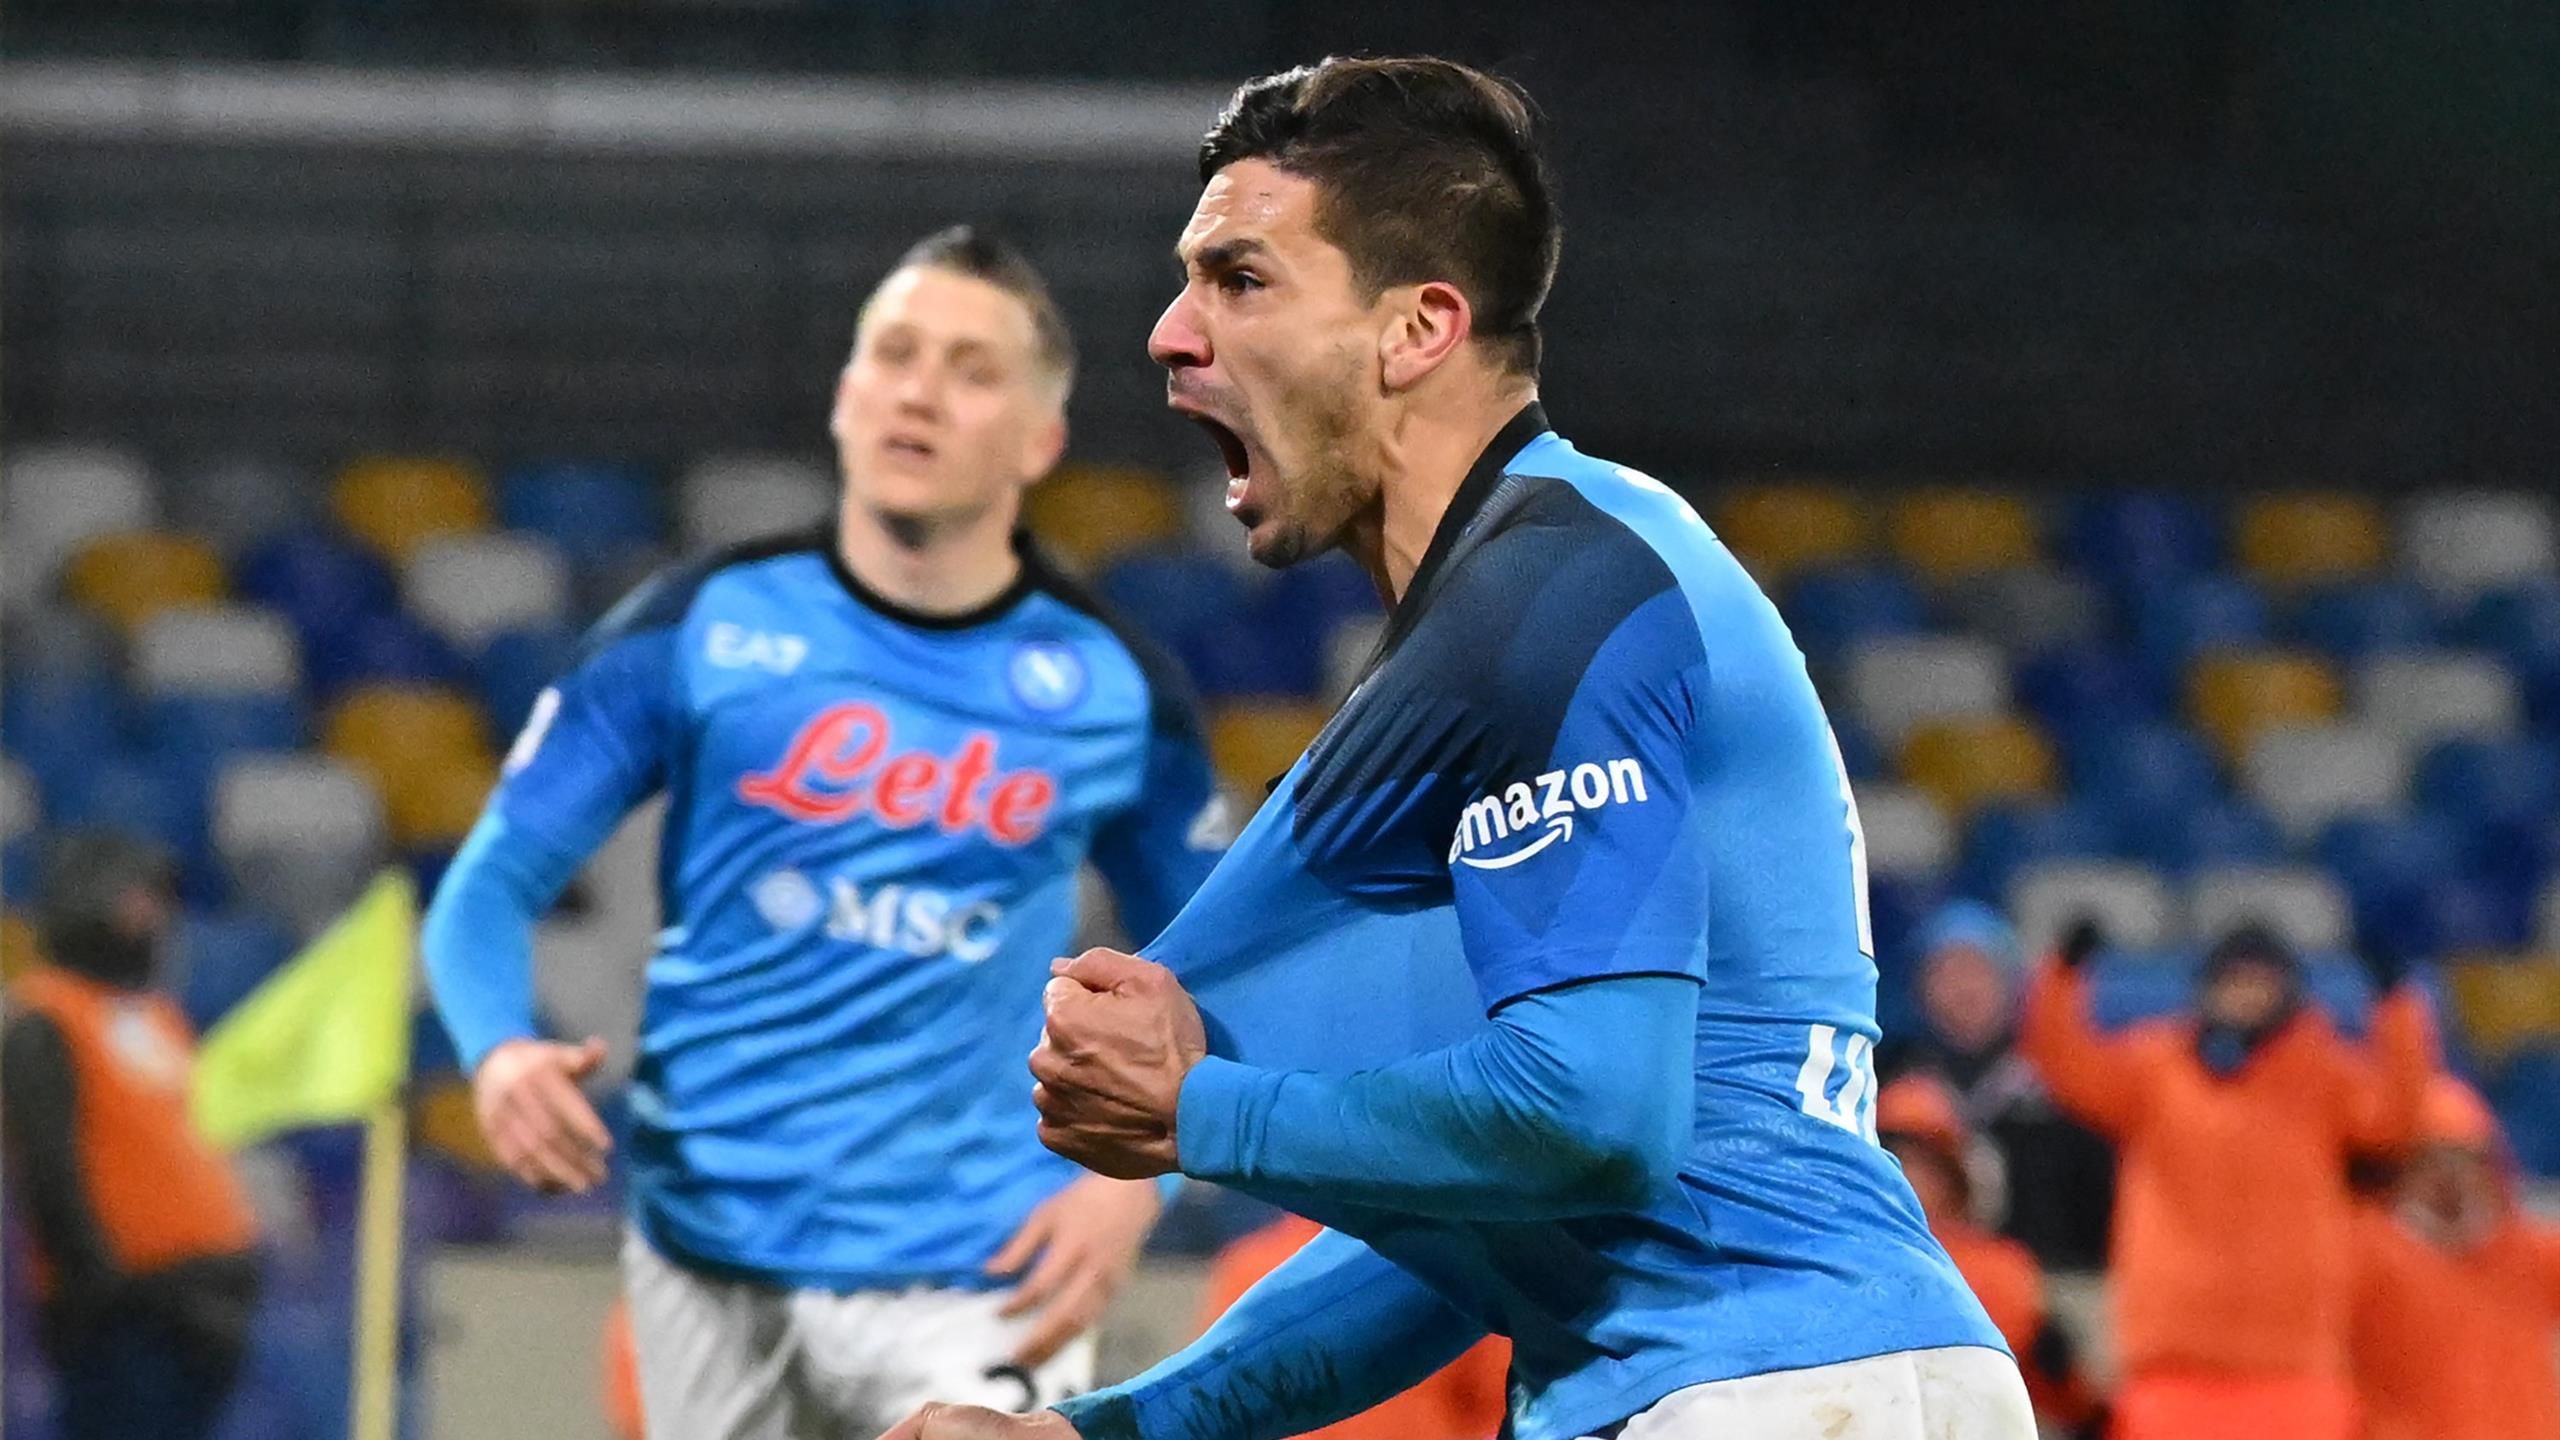 AS Roma 2 - 0 Napoli : Le capitaine lance la Roma vers la victoire